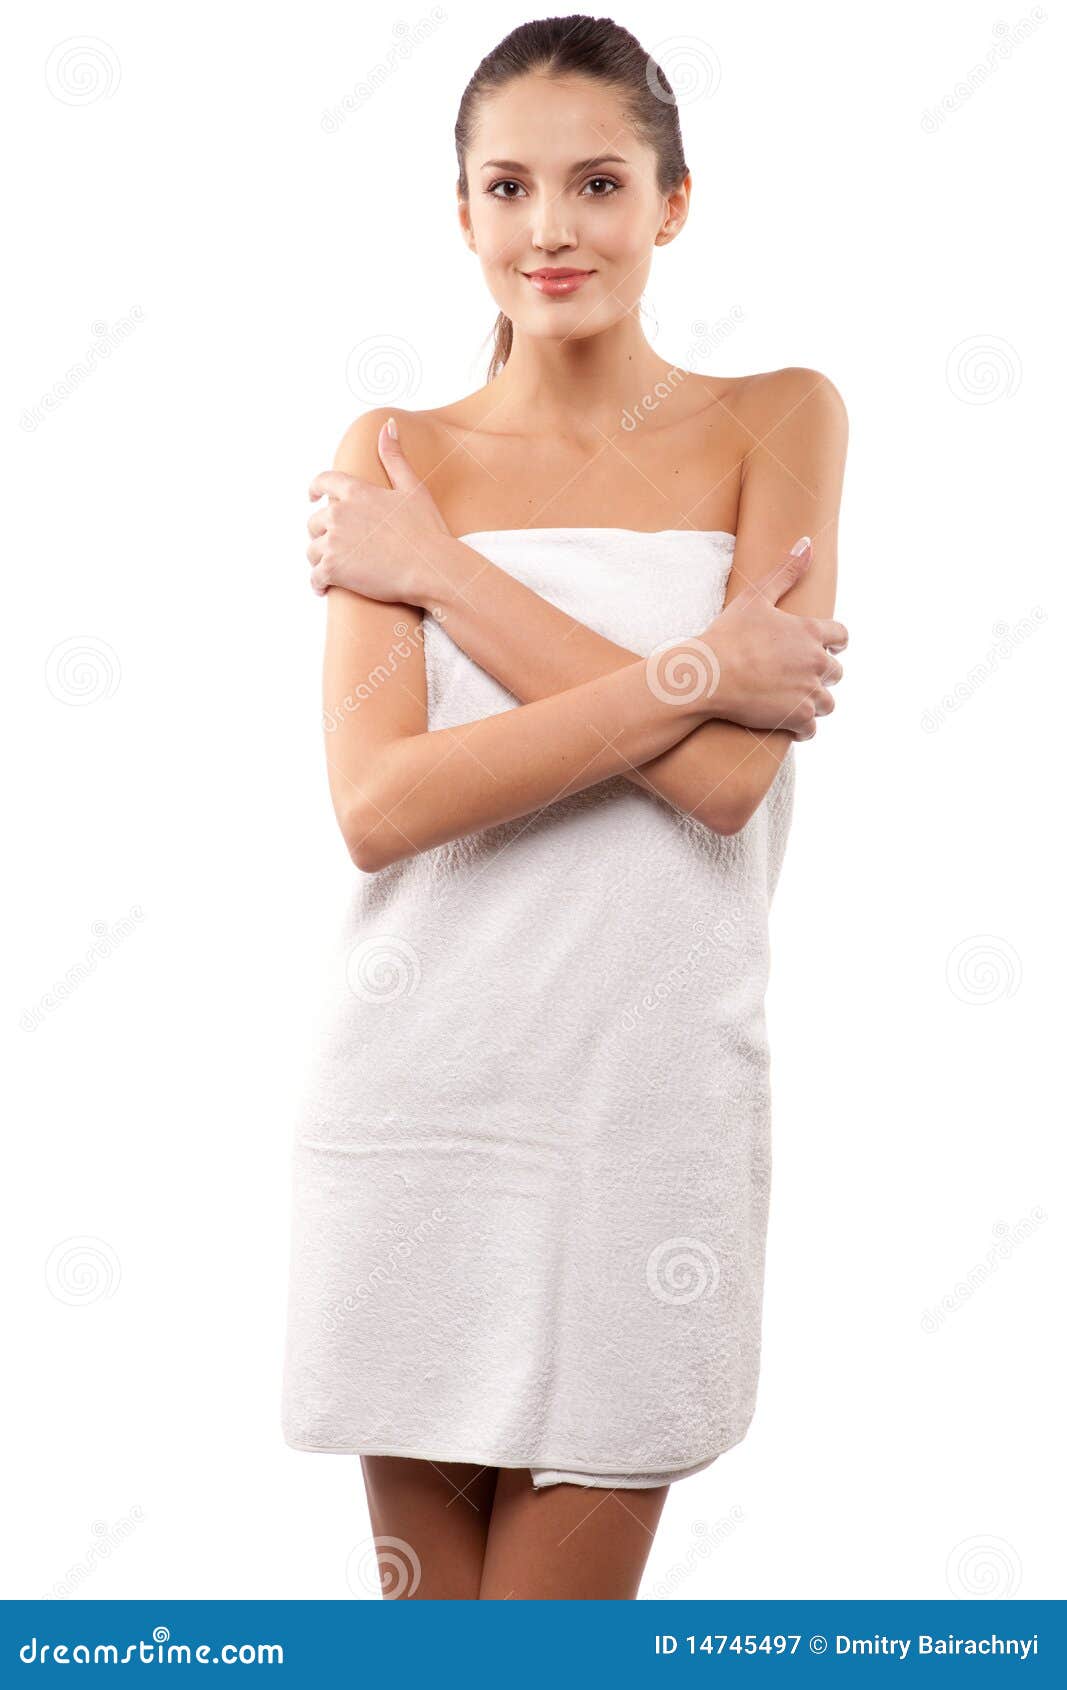 Прикрылась полотенцем. Девушка в полотенце. Девушка в белом полотенце. Стройная девушка в полотенце. Красавица в полотенце.